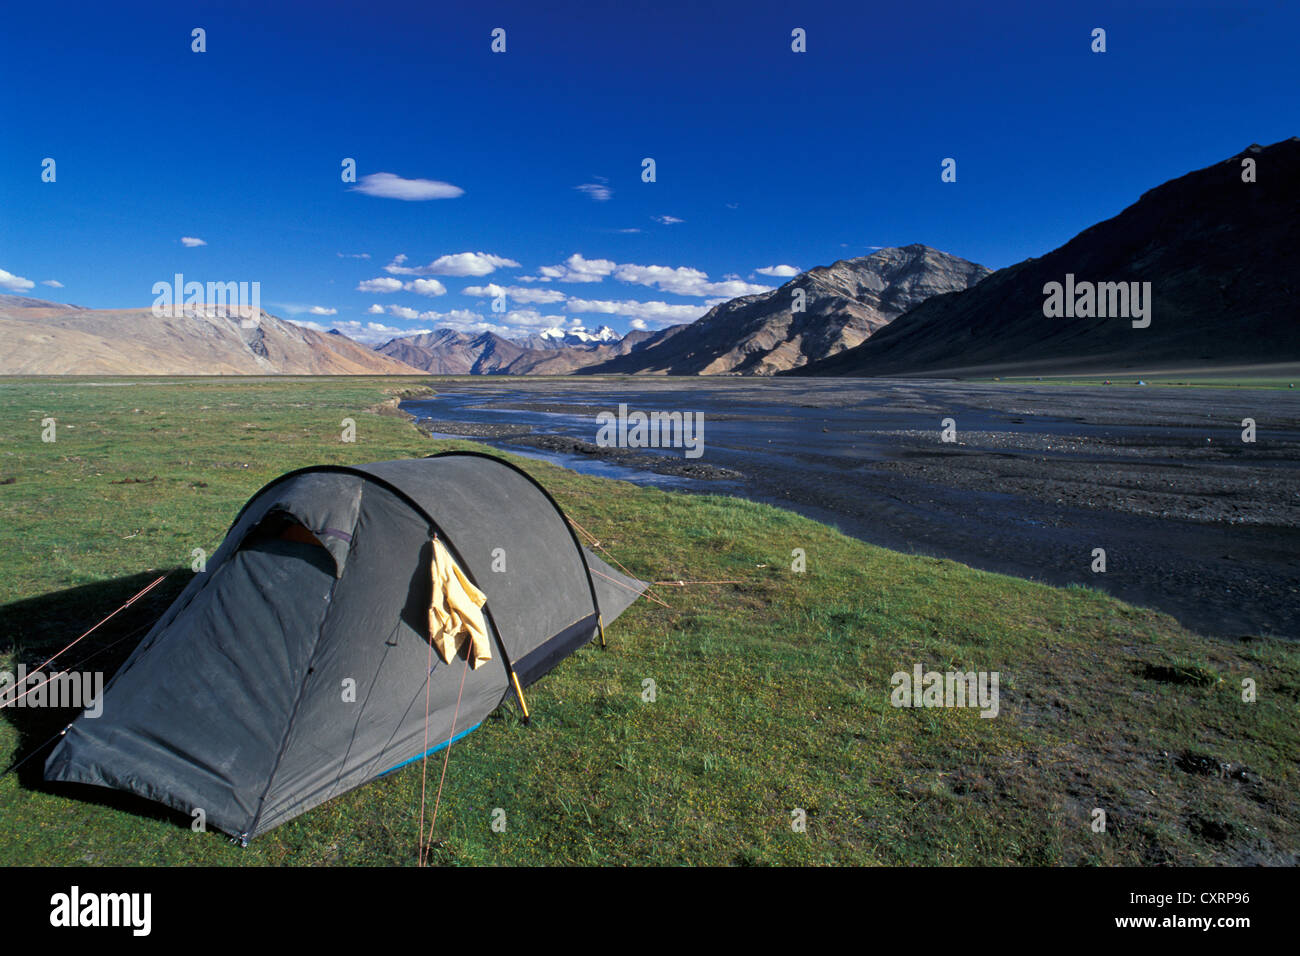 Tente près du lac de haute altitude, Tso Moriri Tsomoriri ou le lac Moriri, Changtang ou Changthang, Ladakh, Himalaya Indien Banque D'Images